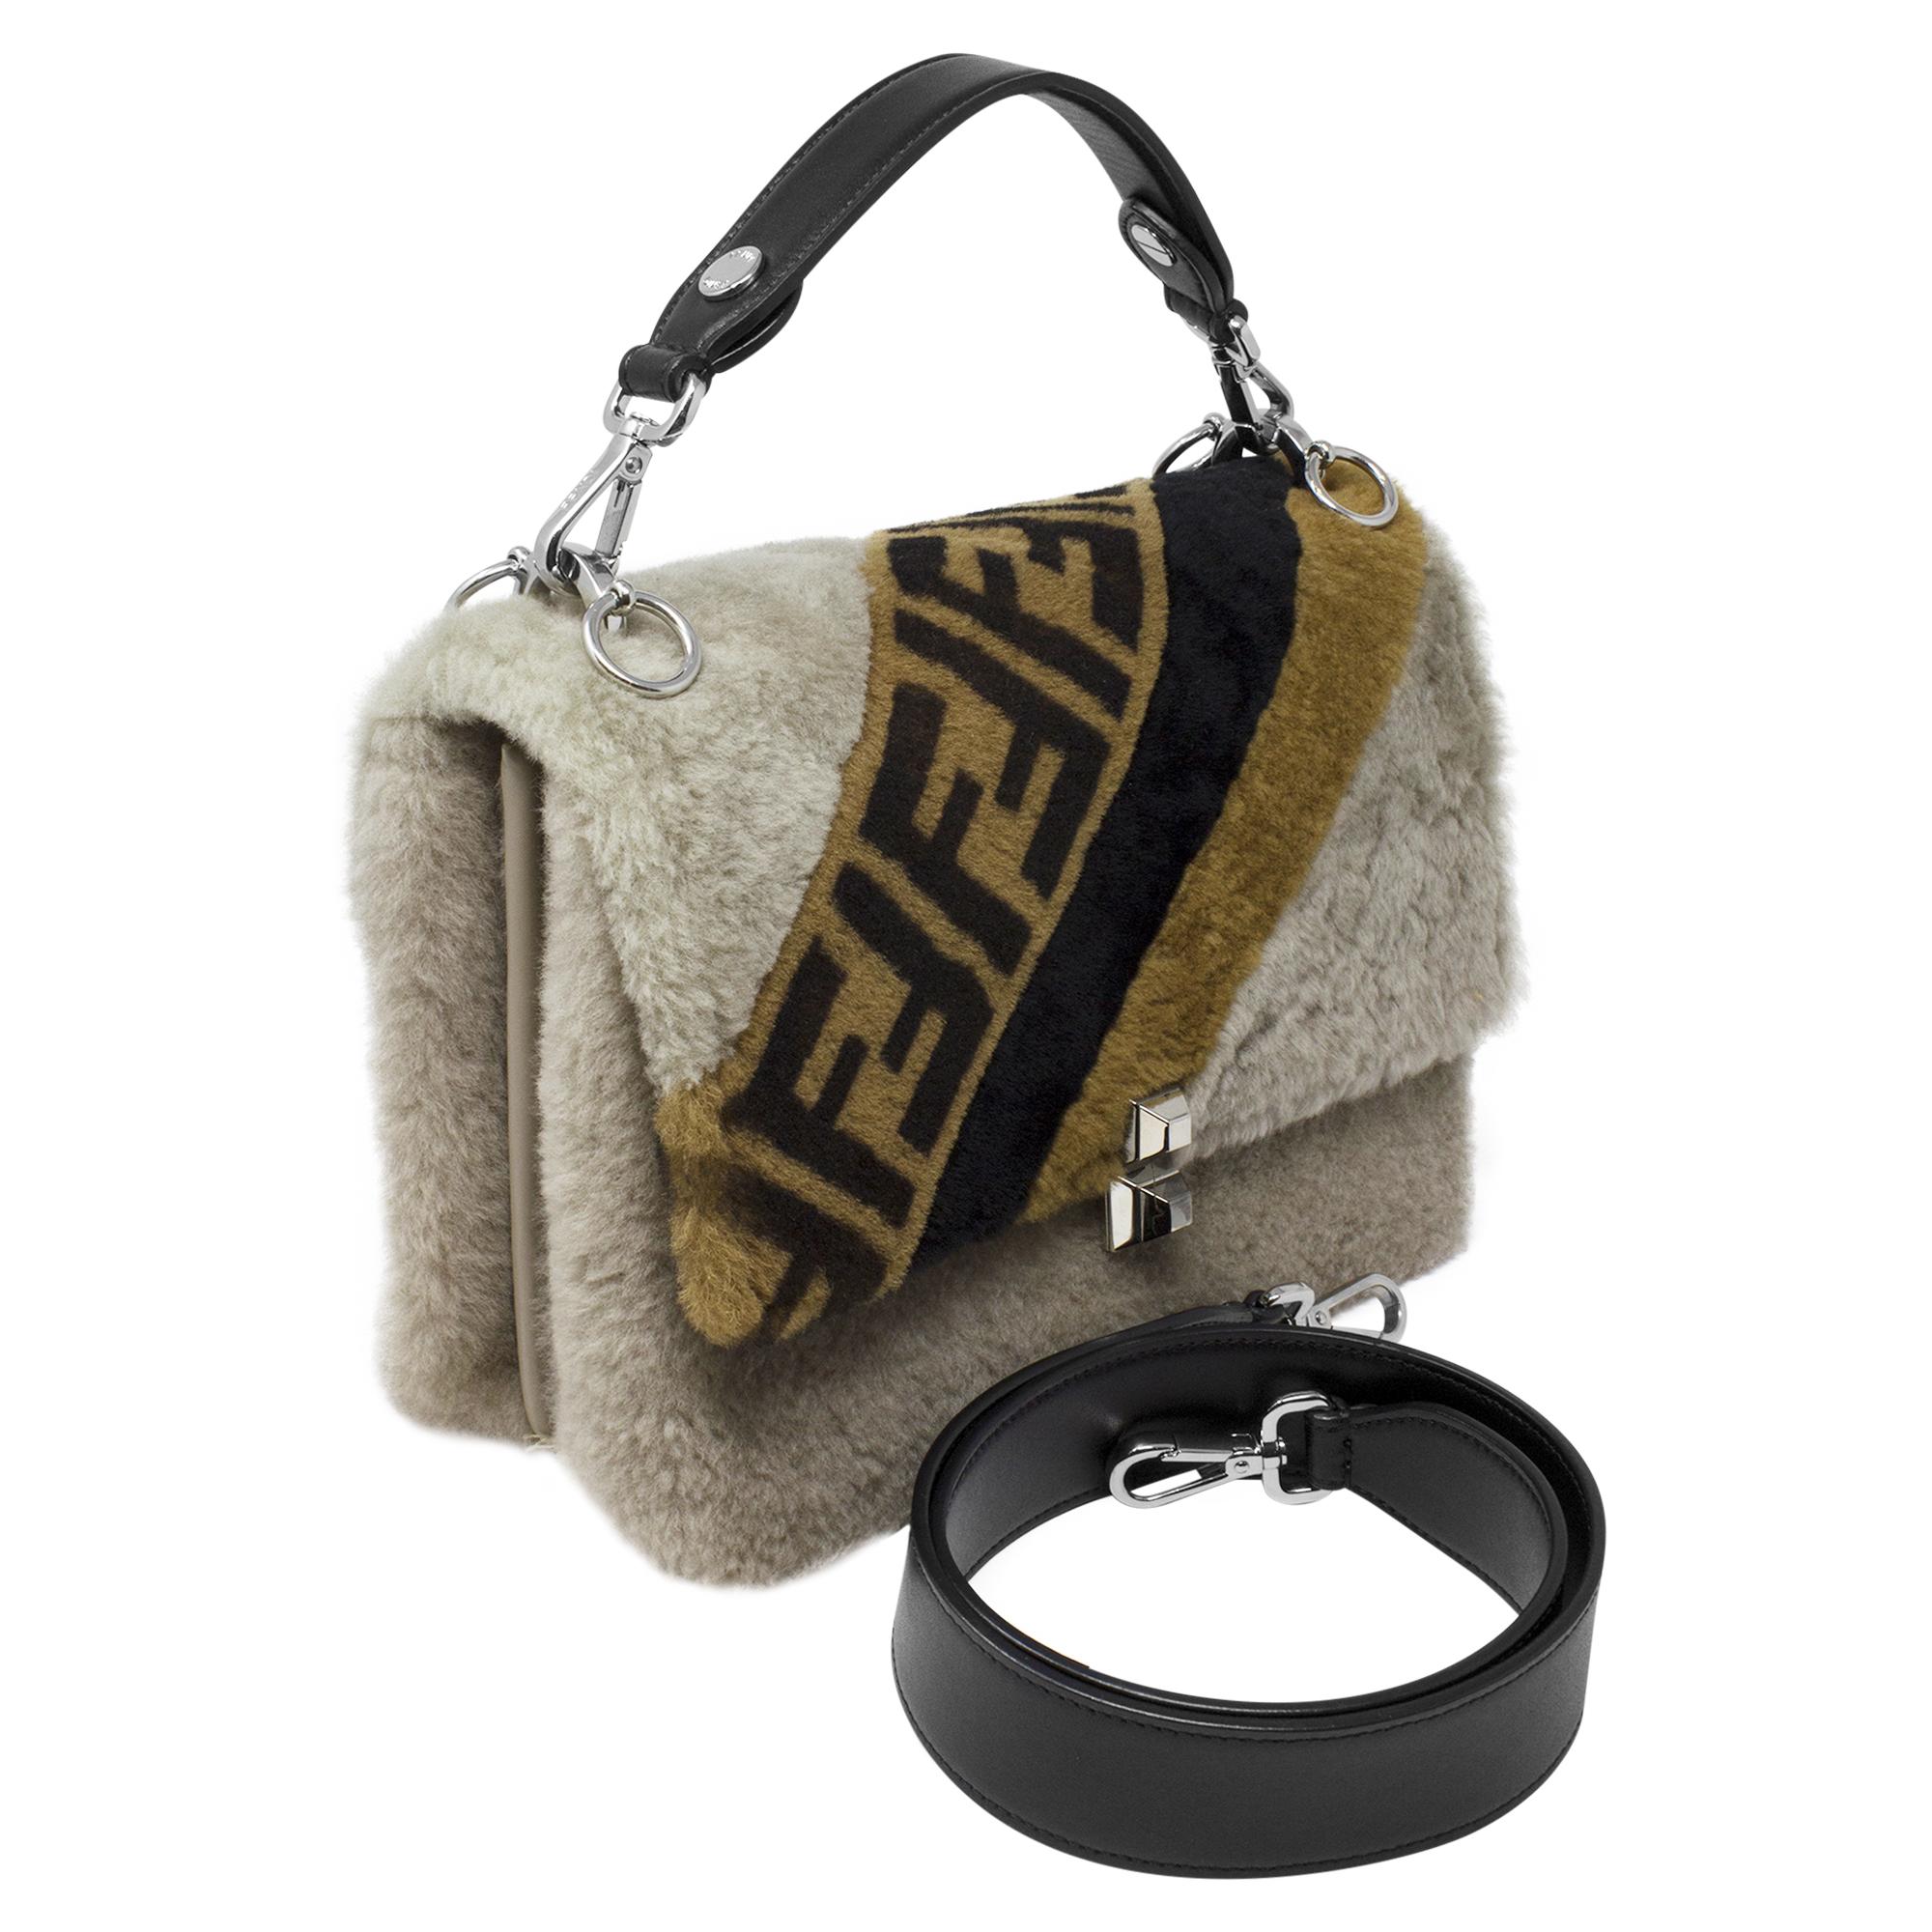 Die Fendi Limited Edition Shearling Zucca Flap Bag ist ein luxuriöses Statement für Modekenner. Diese Tasche aus prächtigem beigem Shearling-Pelz strahlt Opulenz und Eleganz aus. Mit dem kultigen Zucca-Print von Fendi verziert, ist sie ein wahres